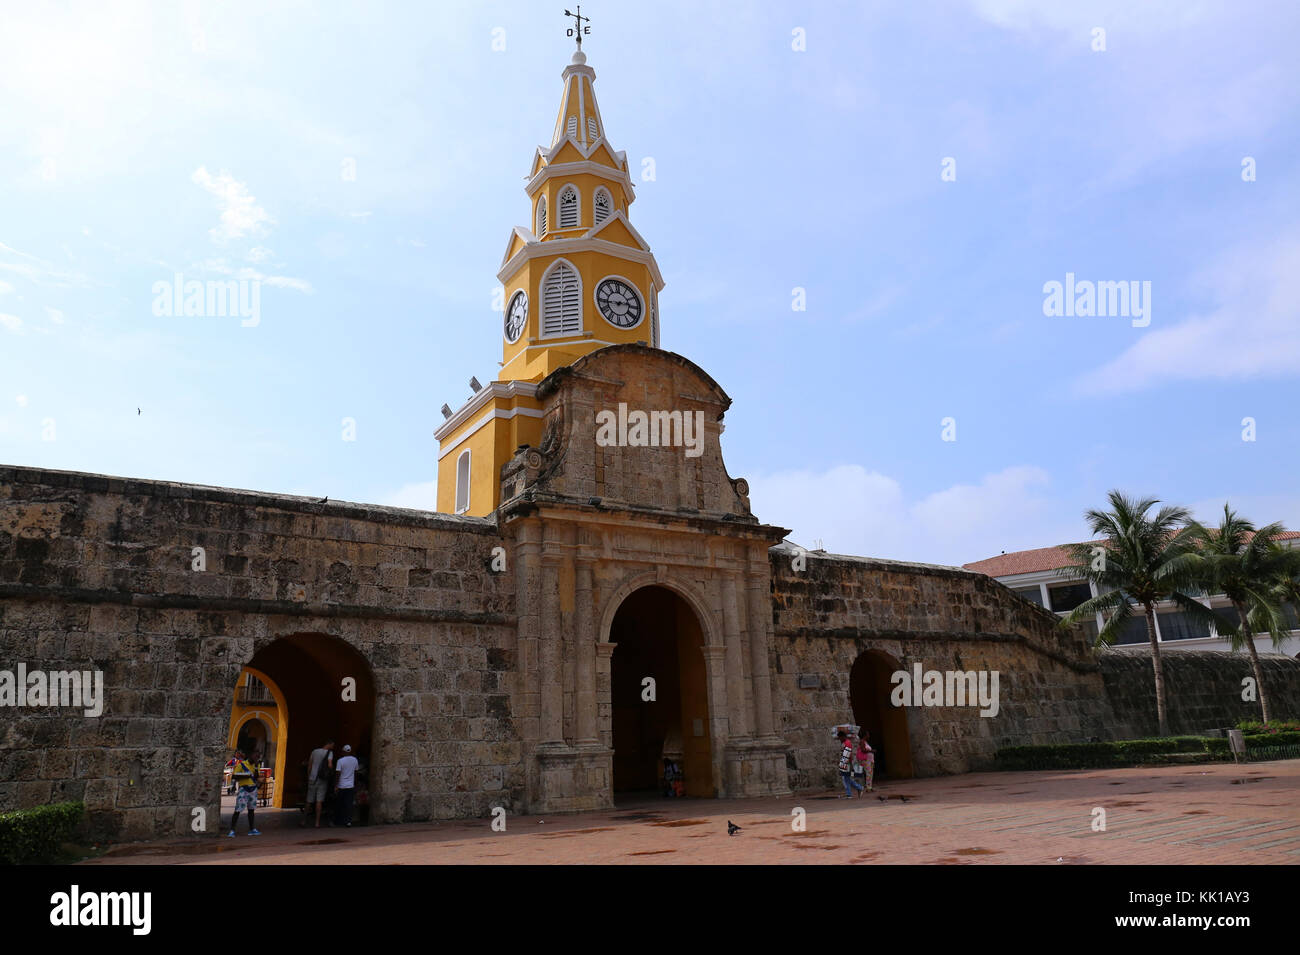 La tour de l'horloge porte de Carthagène, Colombie Banque D'Images